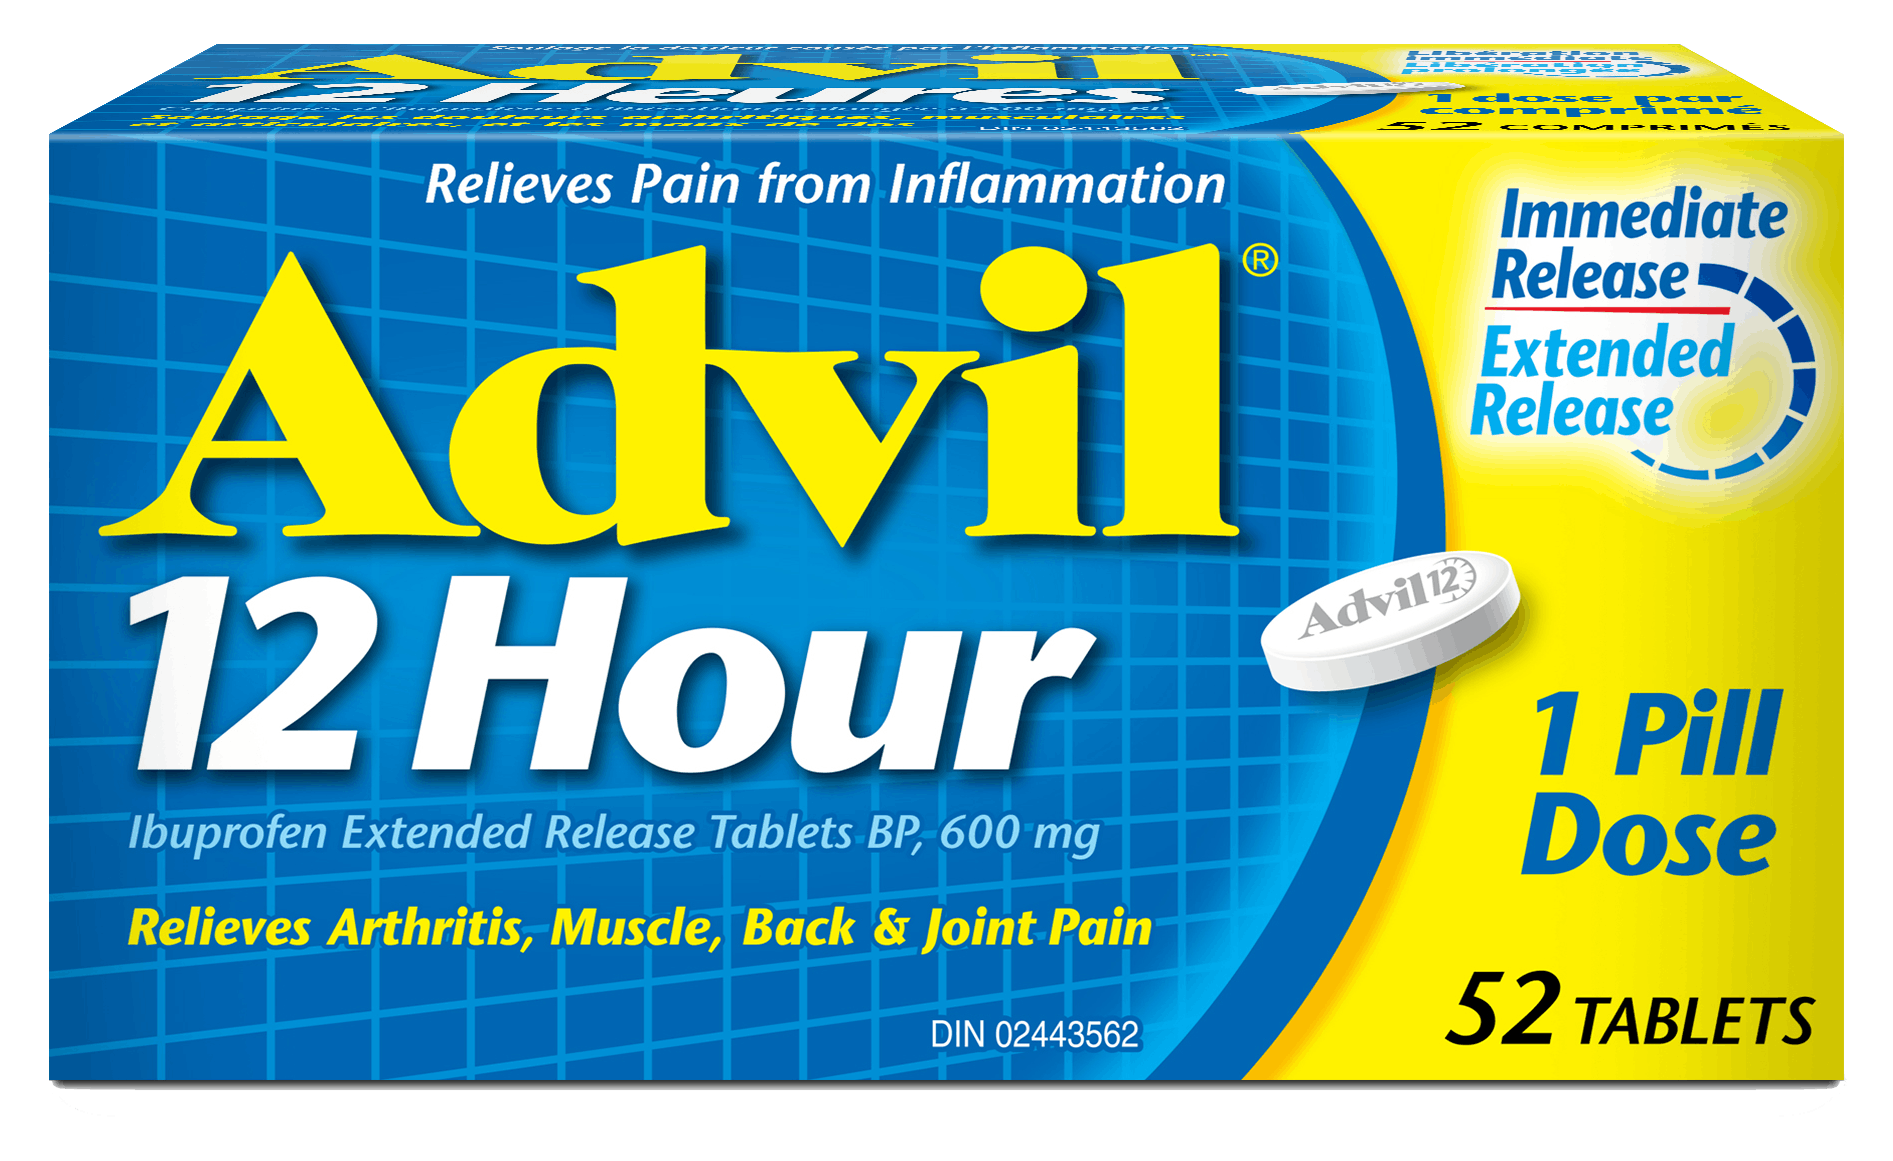 Advil Bonus Web Banner RS LG PACKSHOT EN